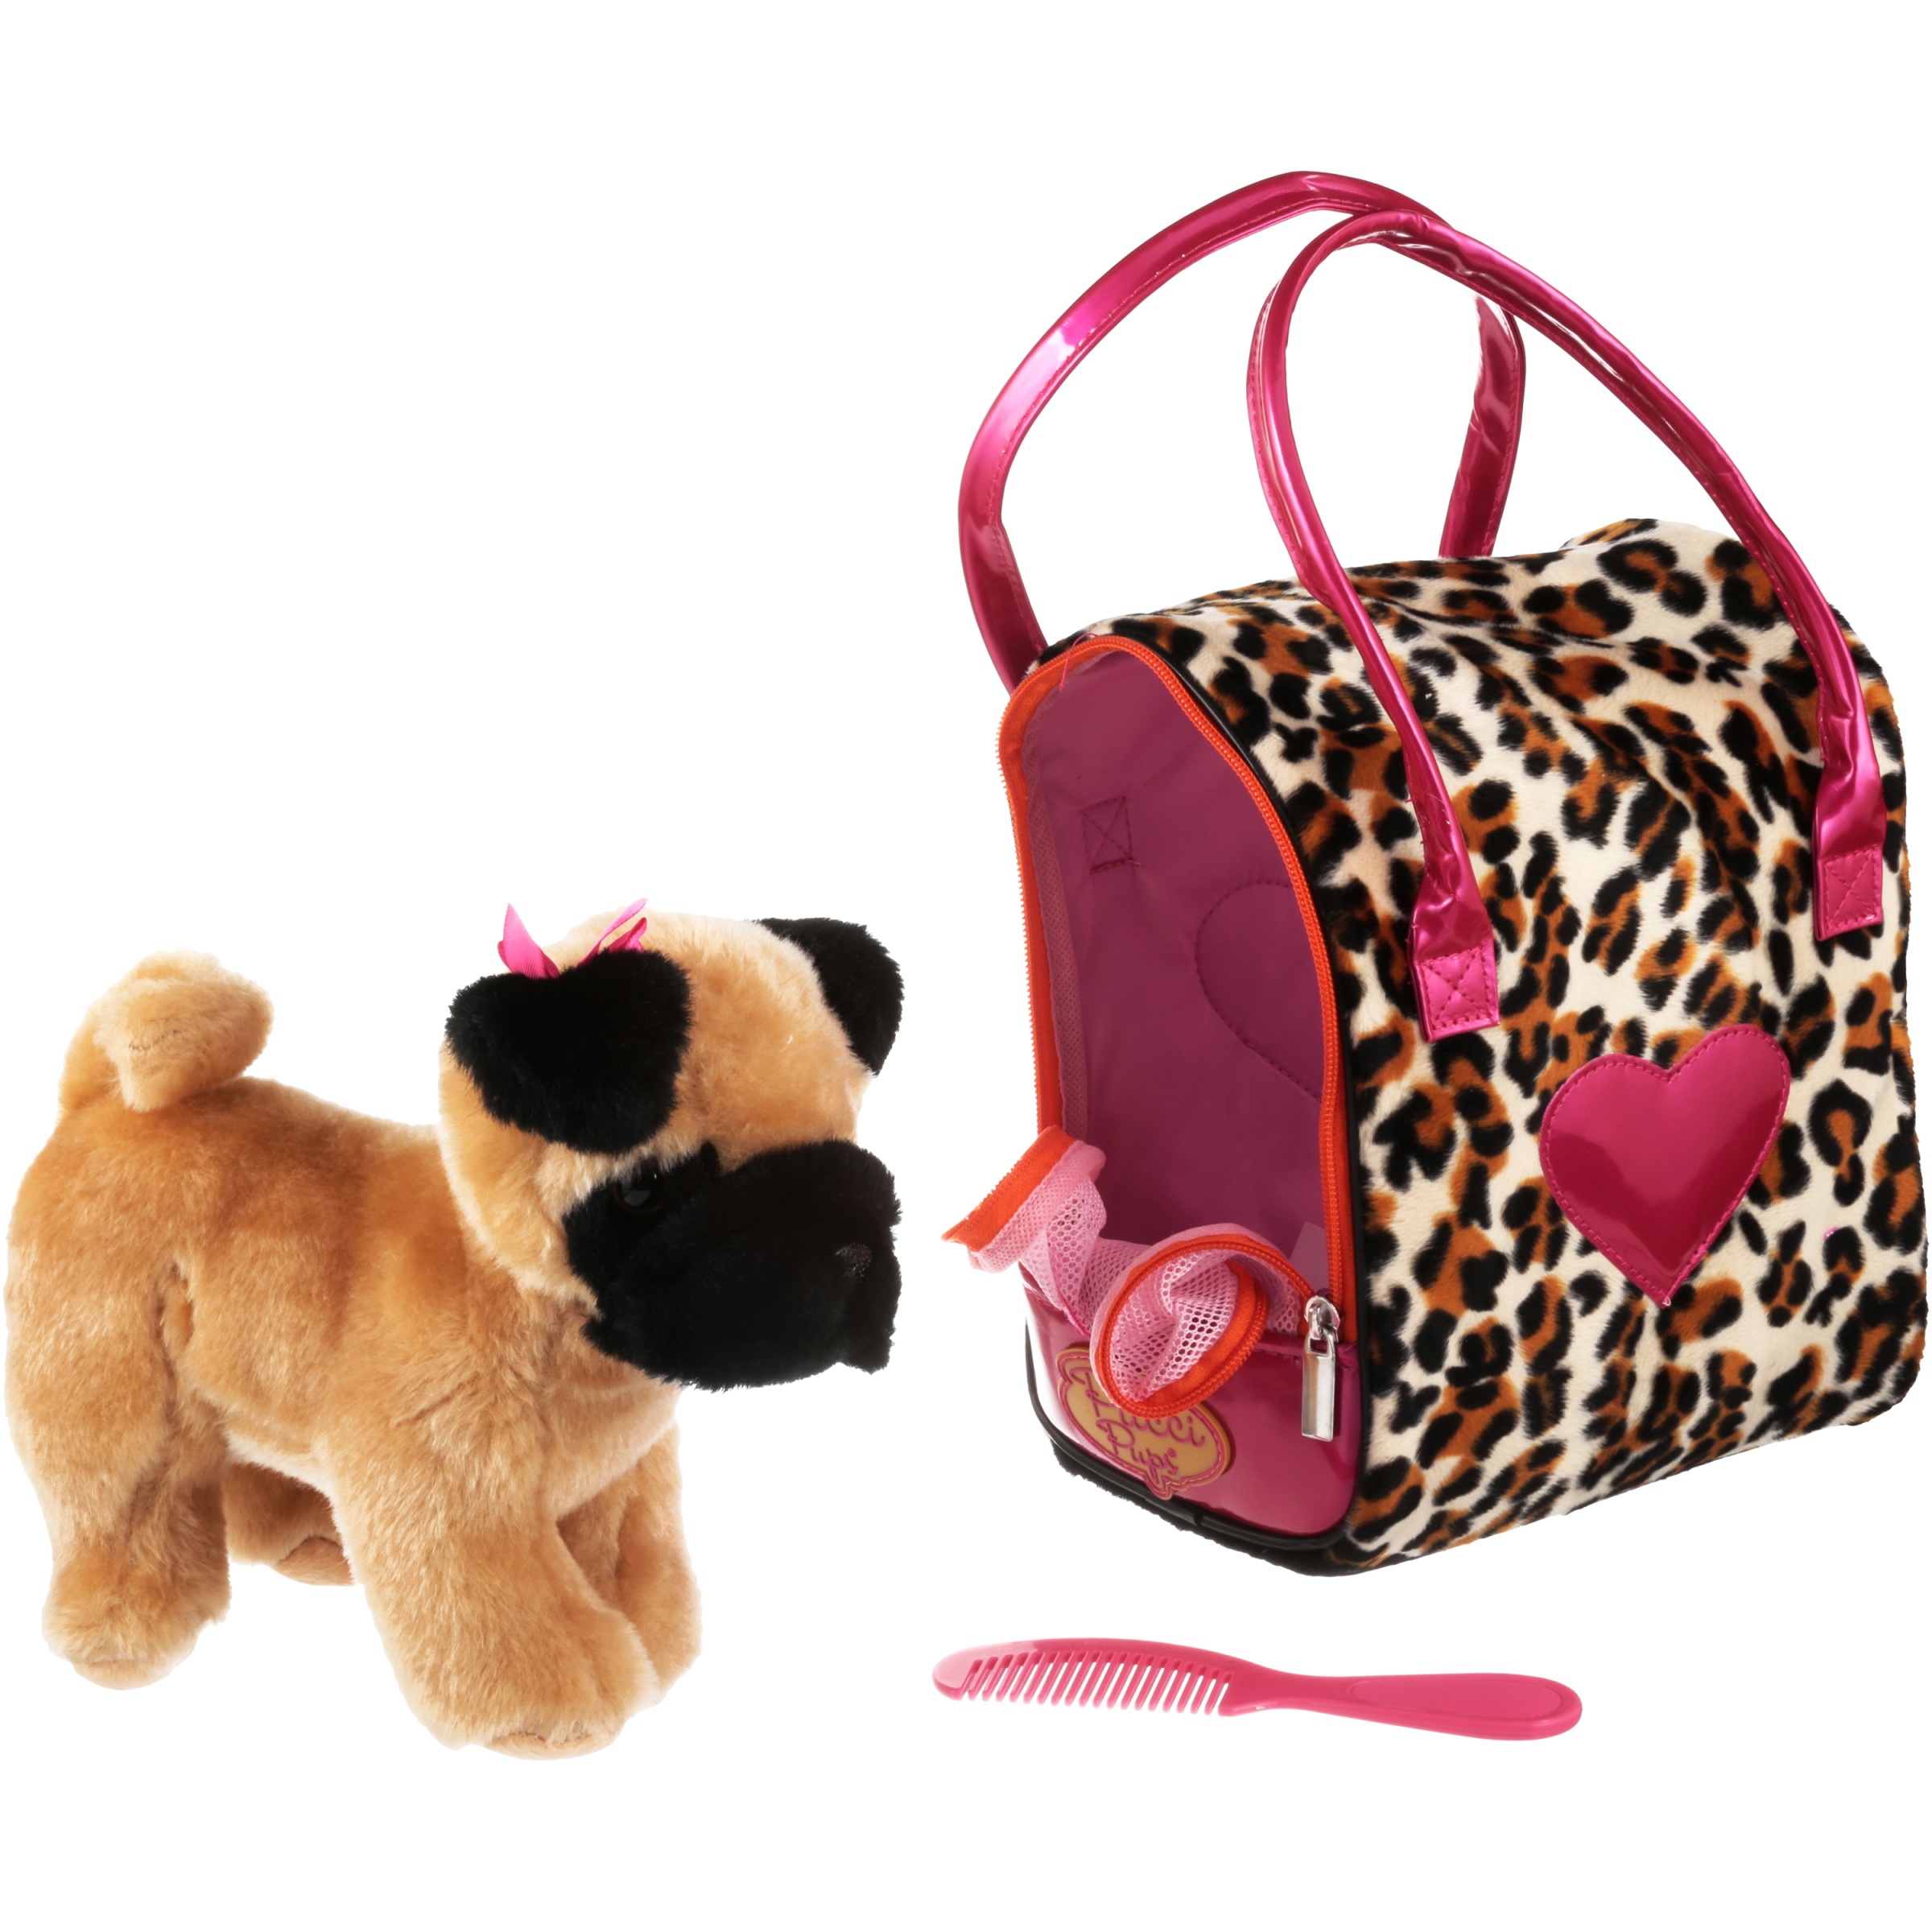 Pucci Pups Pug & Leopard Print Bag - image 3 of 4